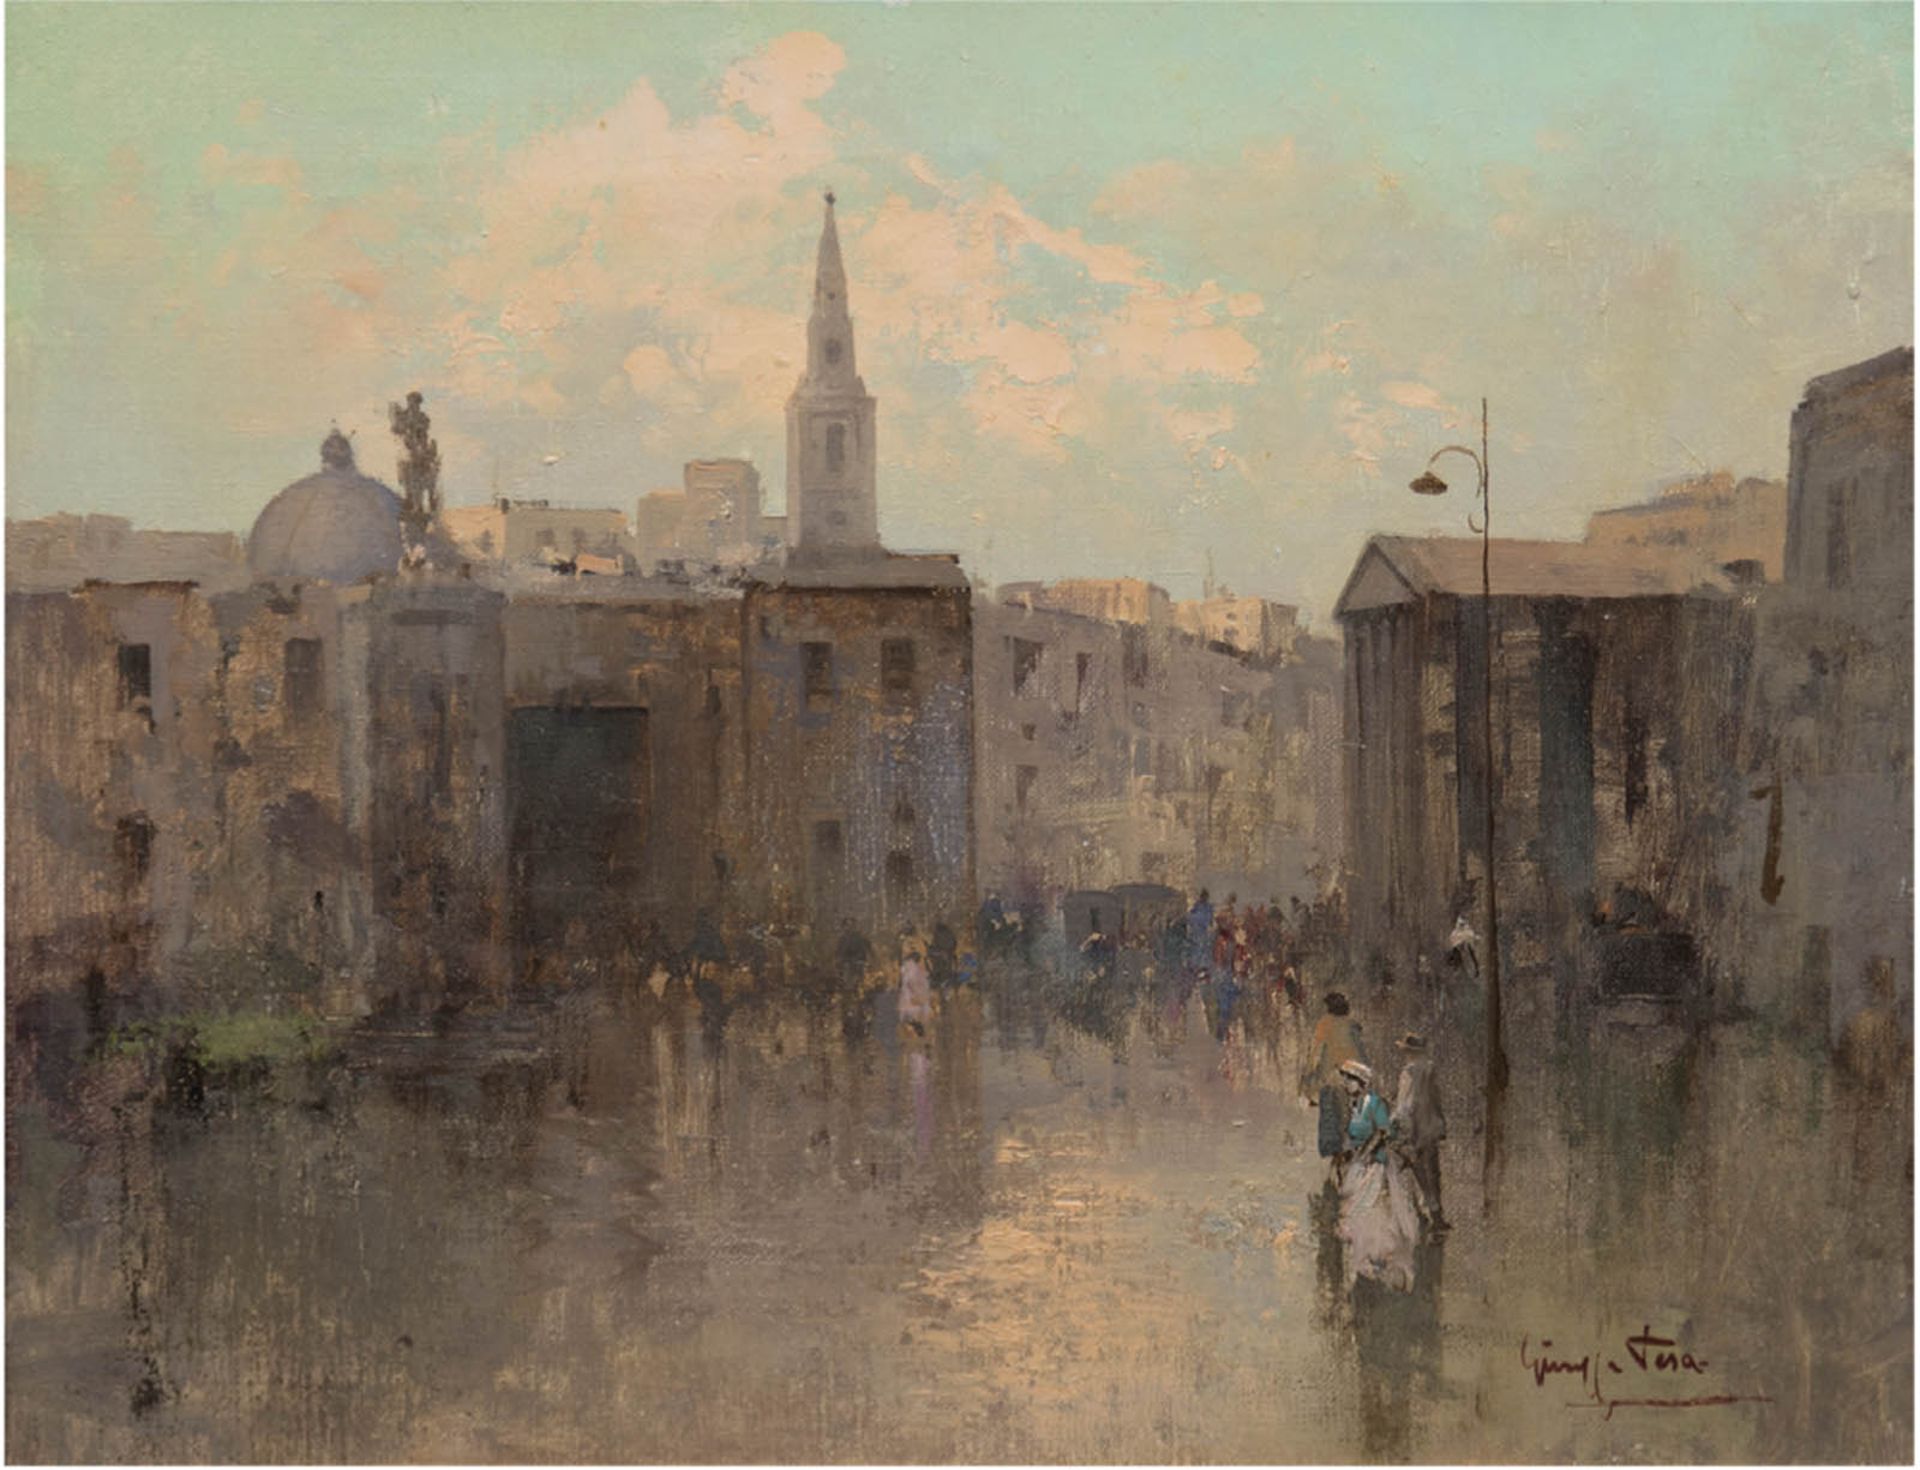 Tesa, Giuseppe (Italienischer Impressionist des 20. Jh.) "Italienische Straßenszene", Öl/Lw